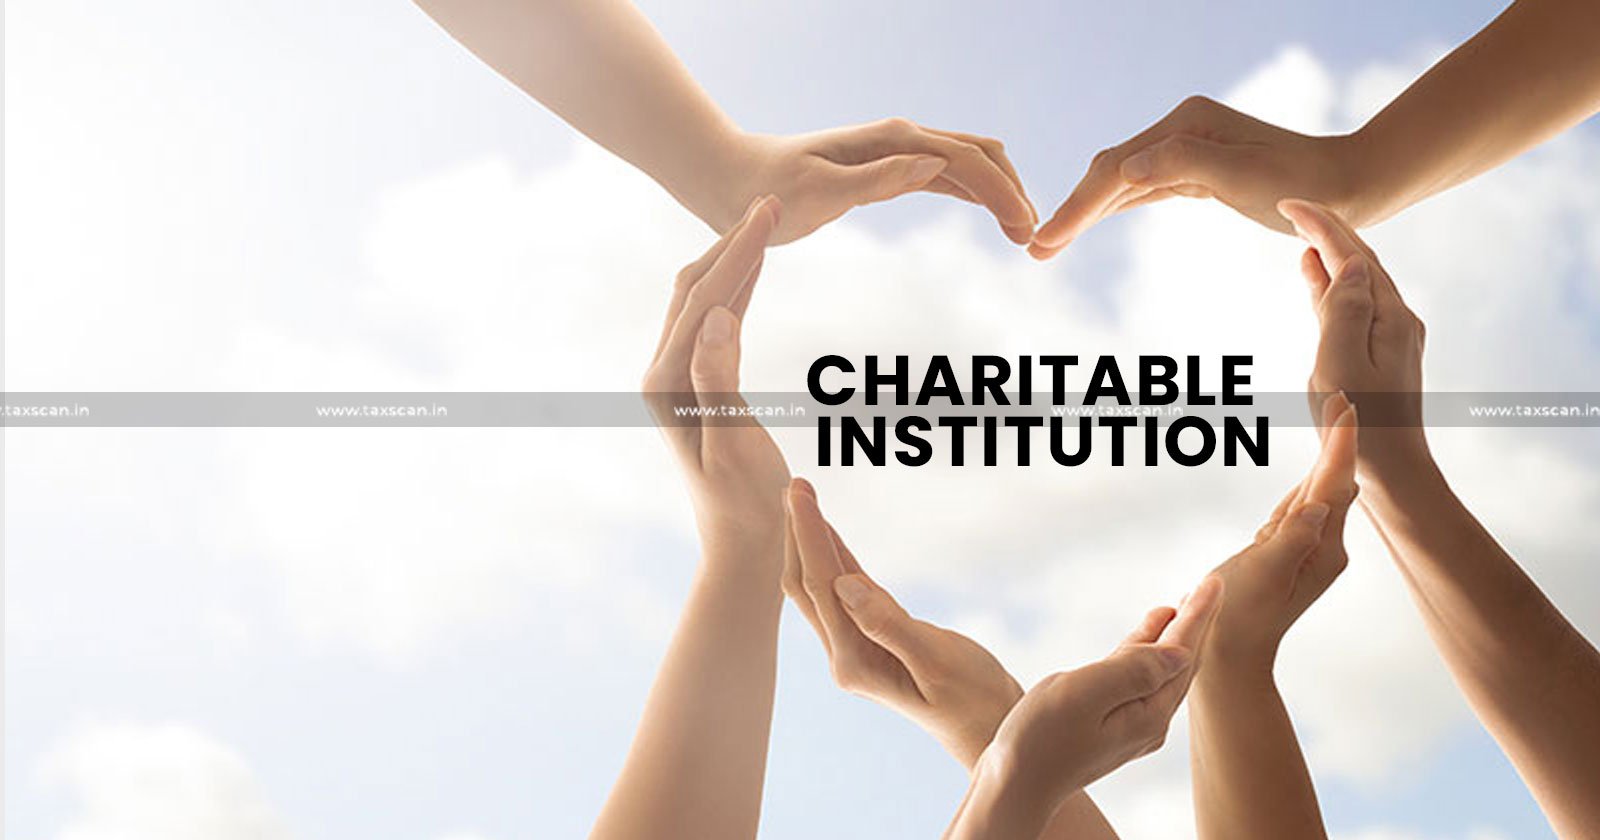 Charitable institutions - Charitable institutions tax - Income Tax - Charitable organization tax in india - ITR 5 - taxscan